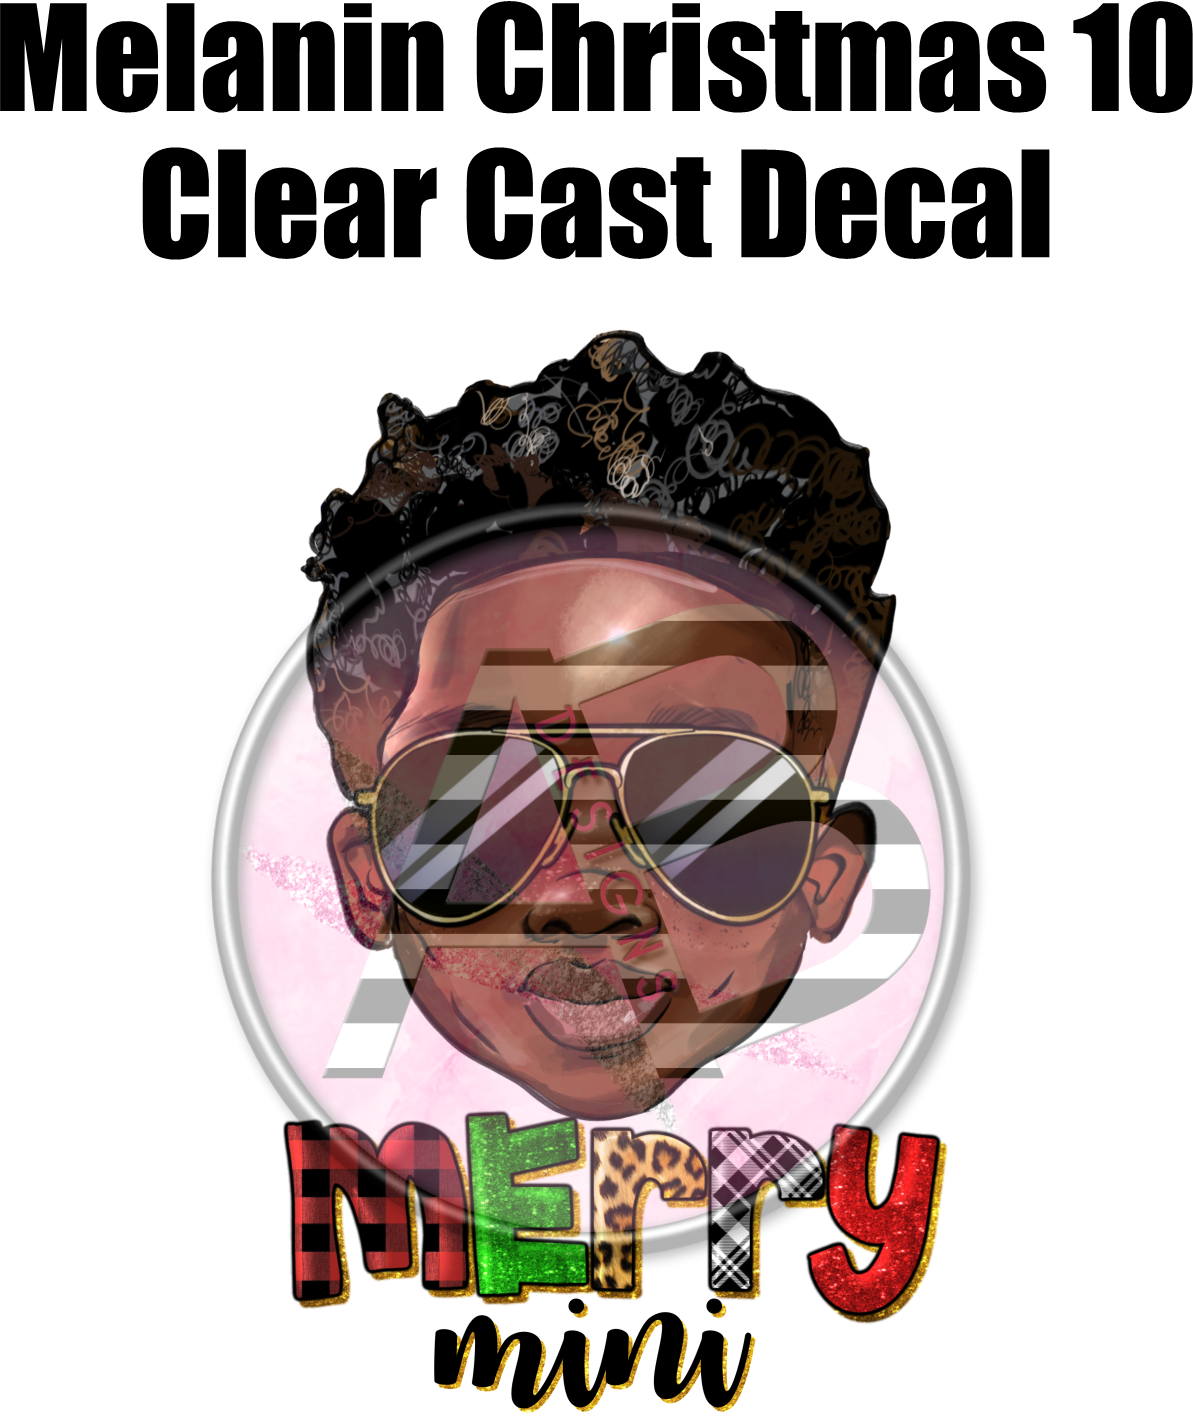 Melanin Christmas 10 - Clear Cast Decal